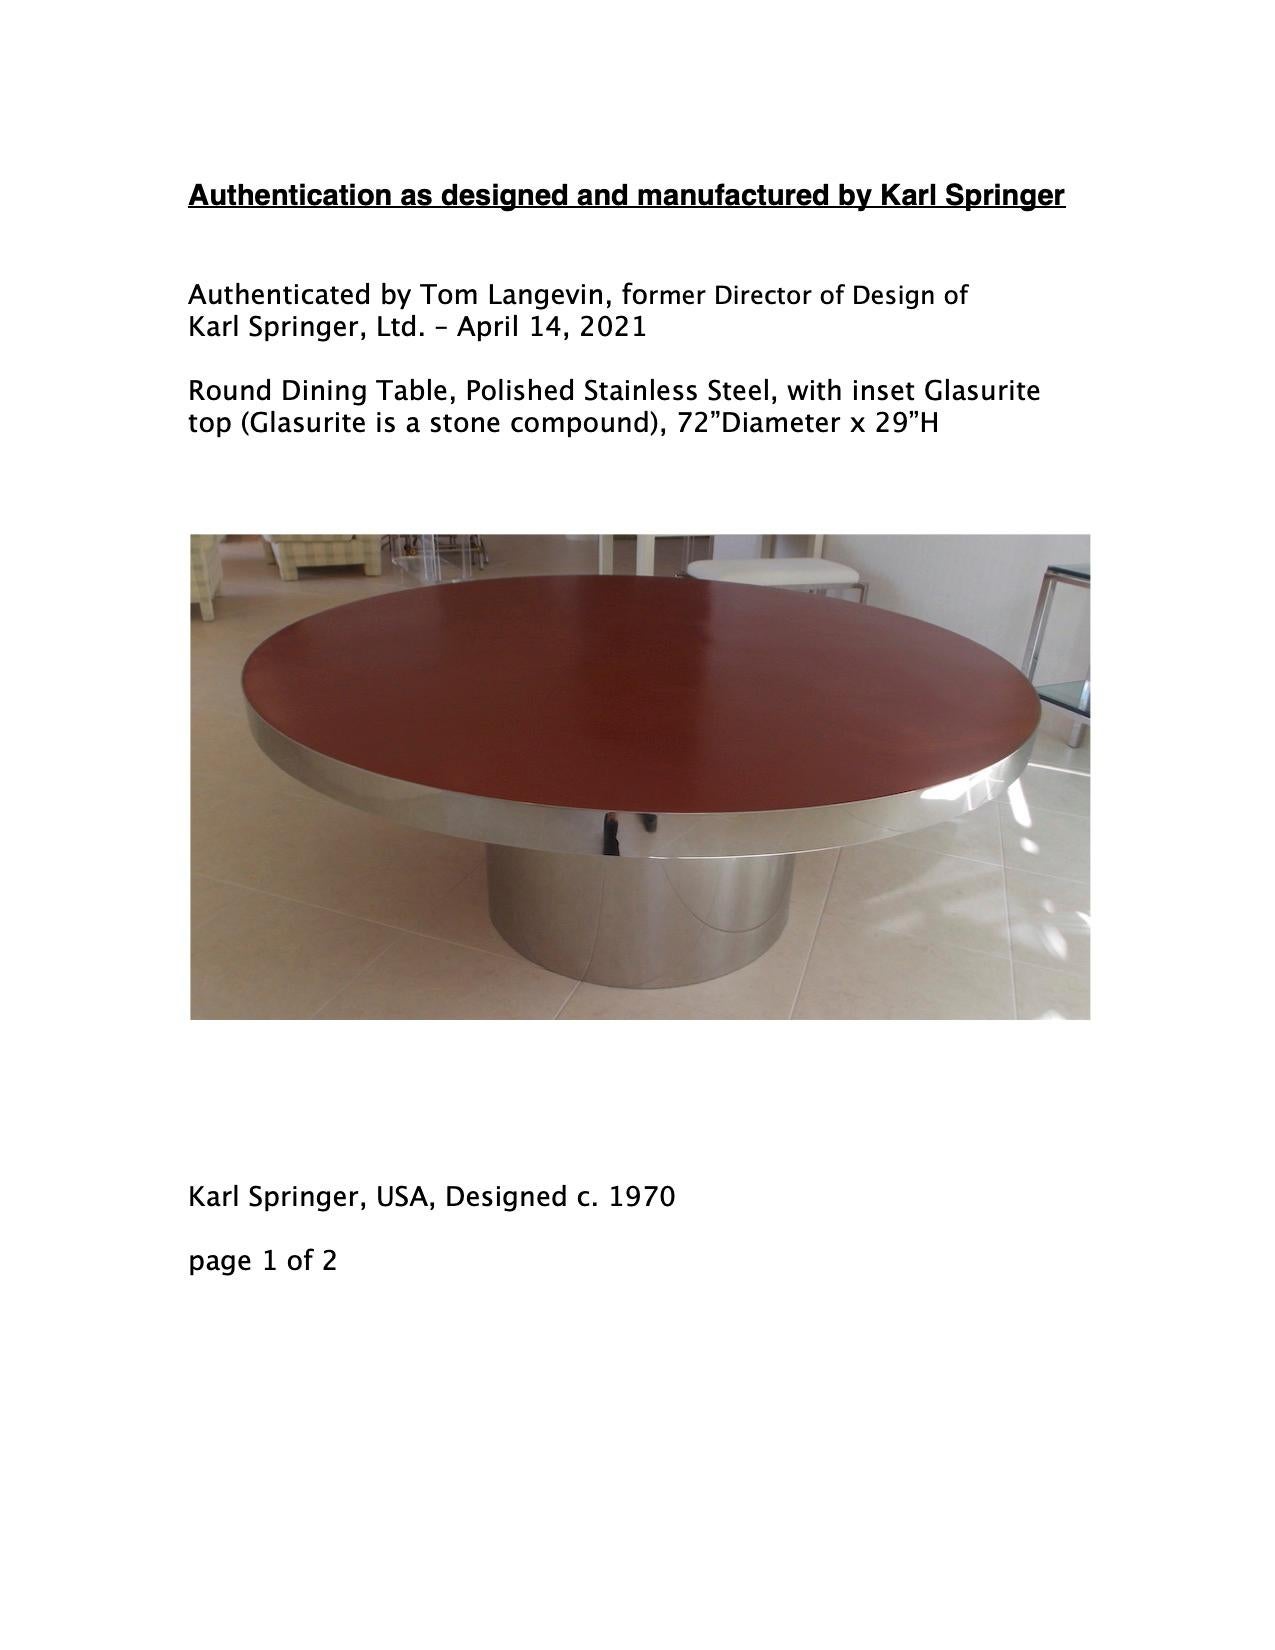 Stainless Steel Karl Springer Custom Dining Table For Sale